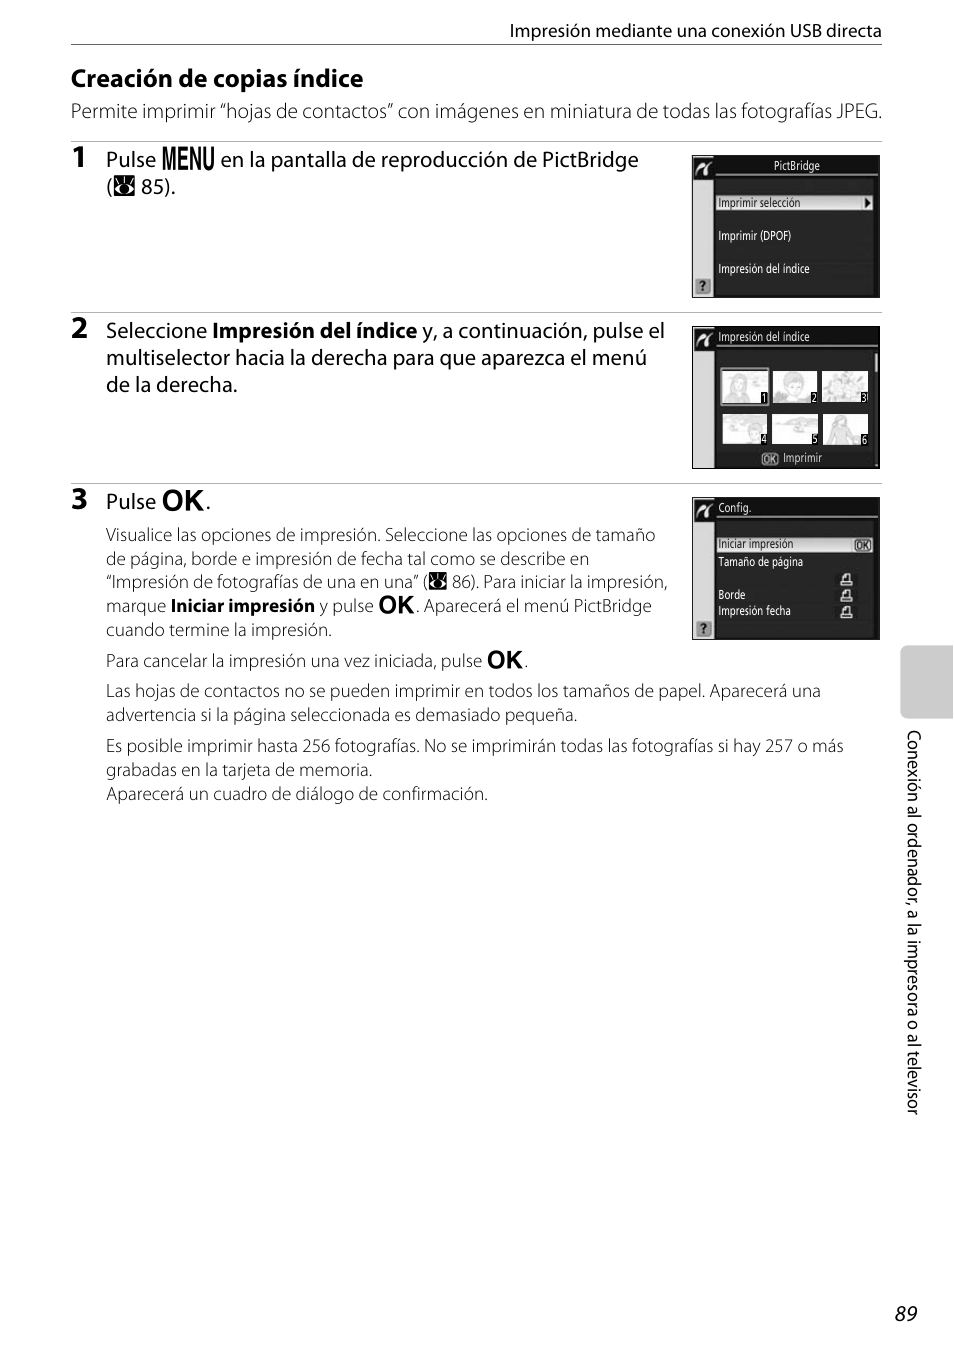 Creación de copias índice, A 89), Pulse q | Nikon D60 Manual del usuario | Página 101 / 204